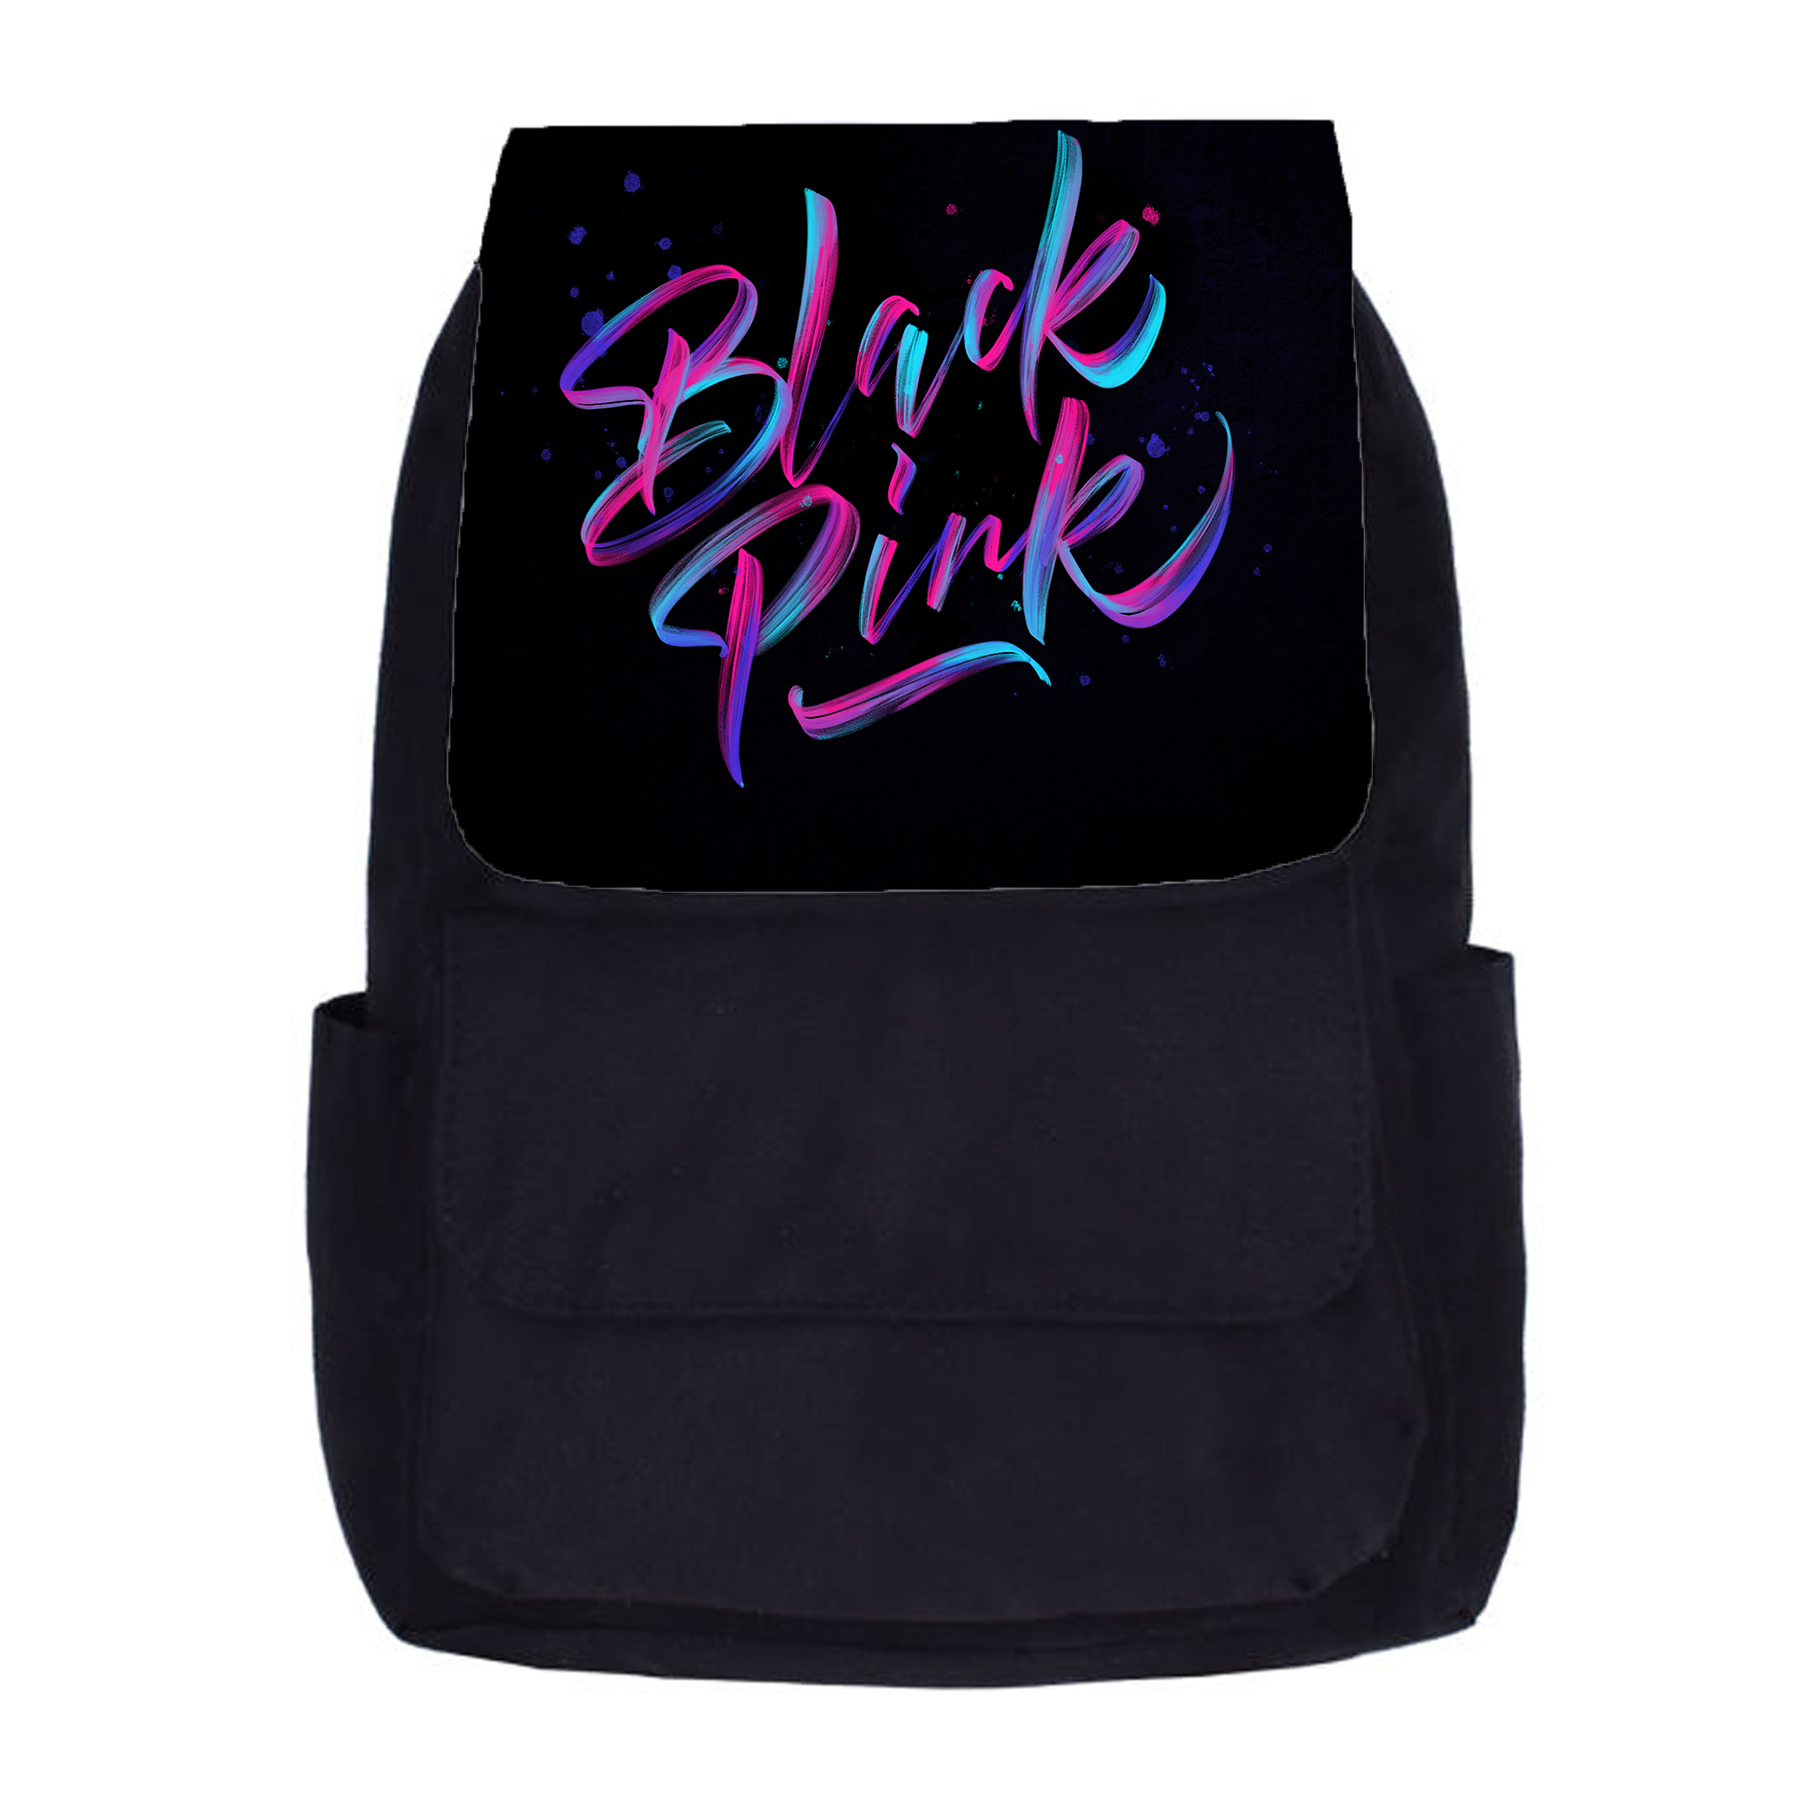 کوله پشتی دخترانه طرح black pink کد kp311